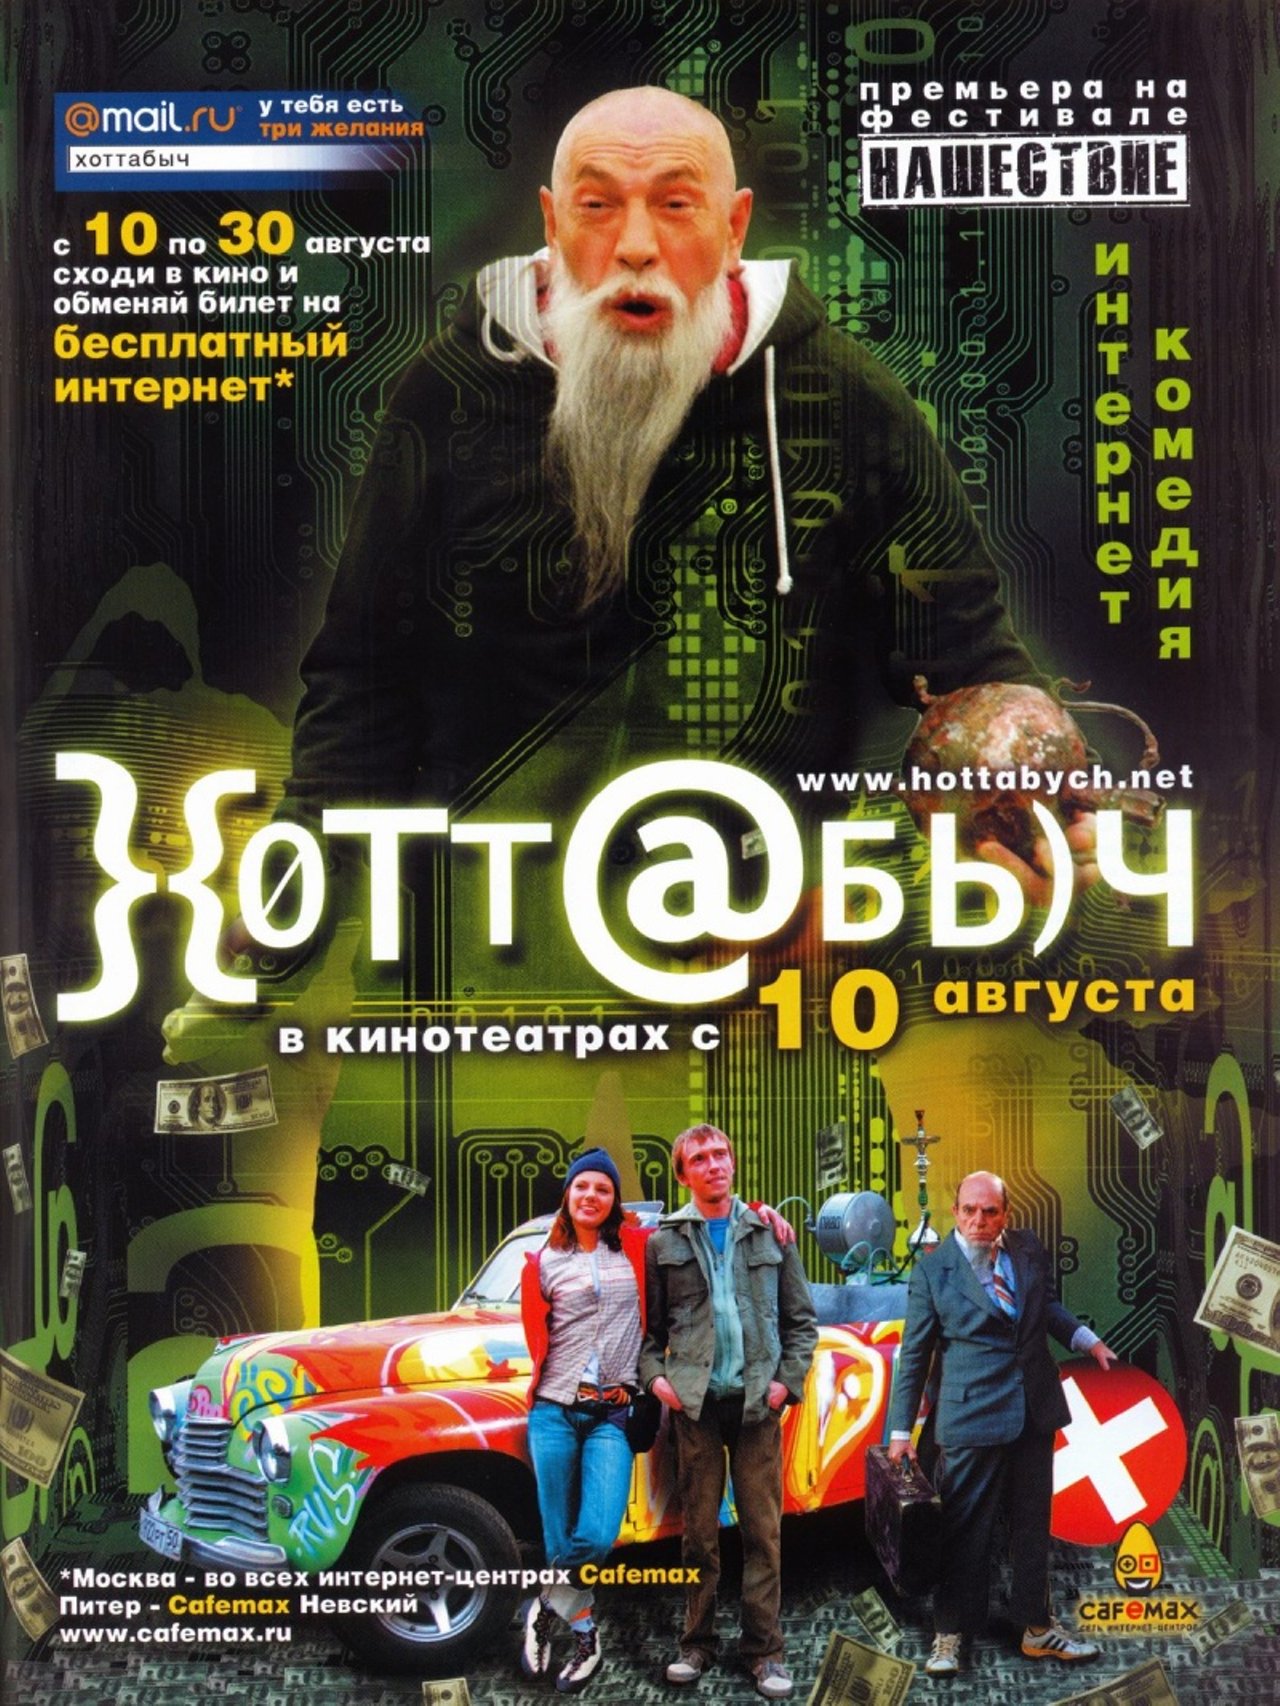 Хоттабыч интернет. Хоттабыч комедия 2006 Россия.